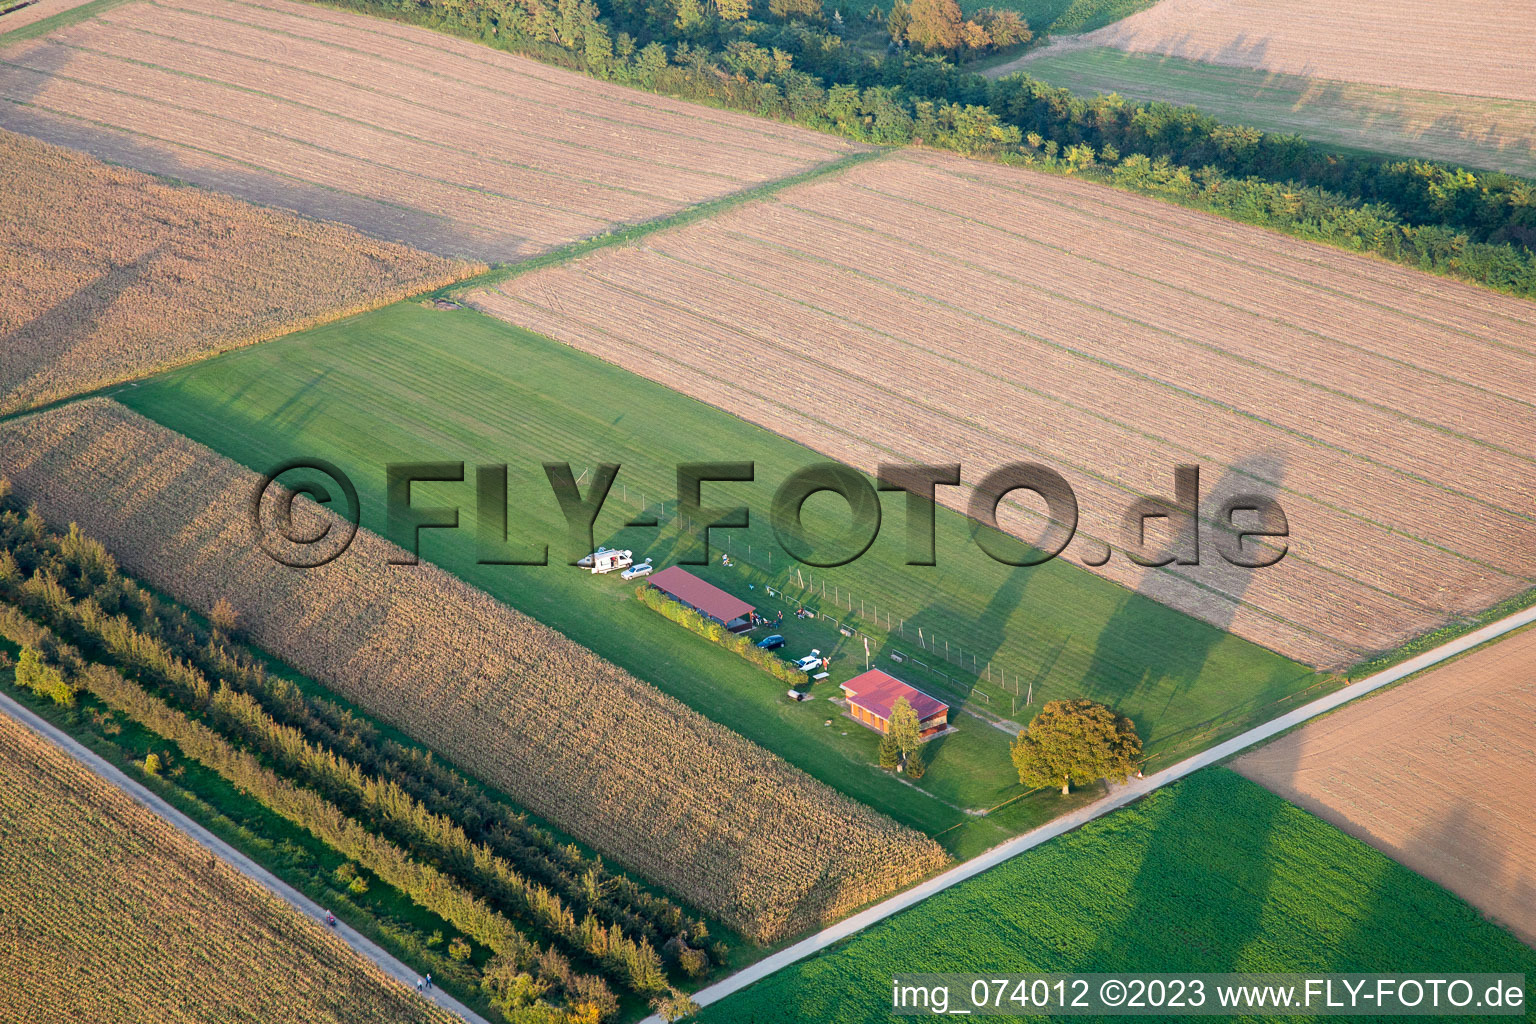 Photographie aérienne de Aérodrome modèle à Freckenfeld dans le département Rhénanie-Palatinat, Allemagne